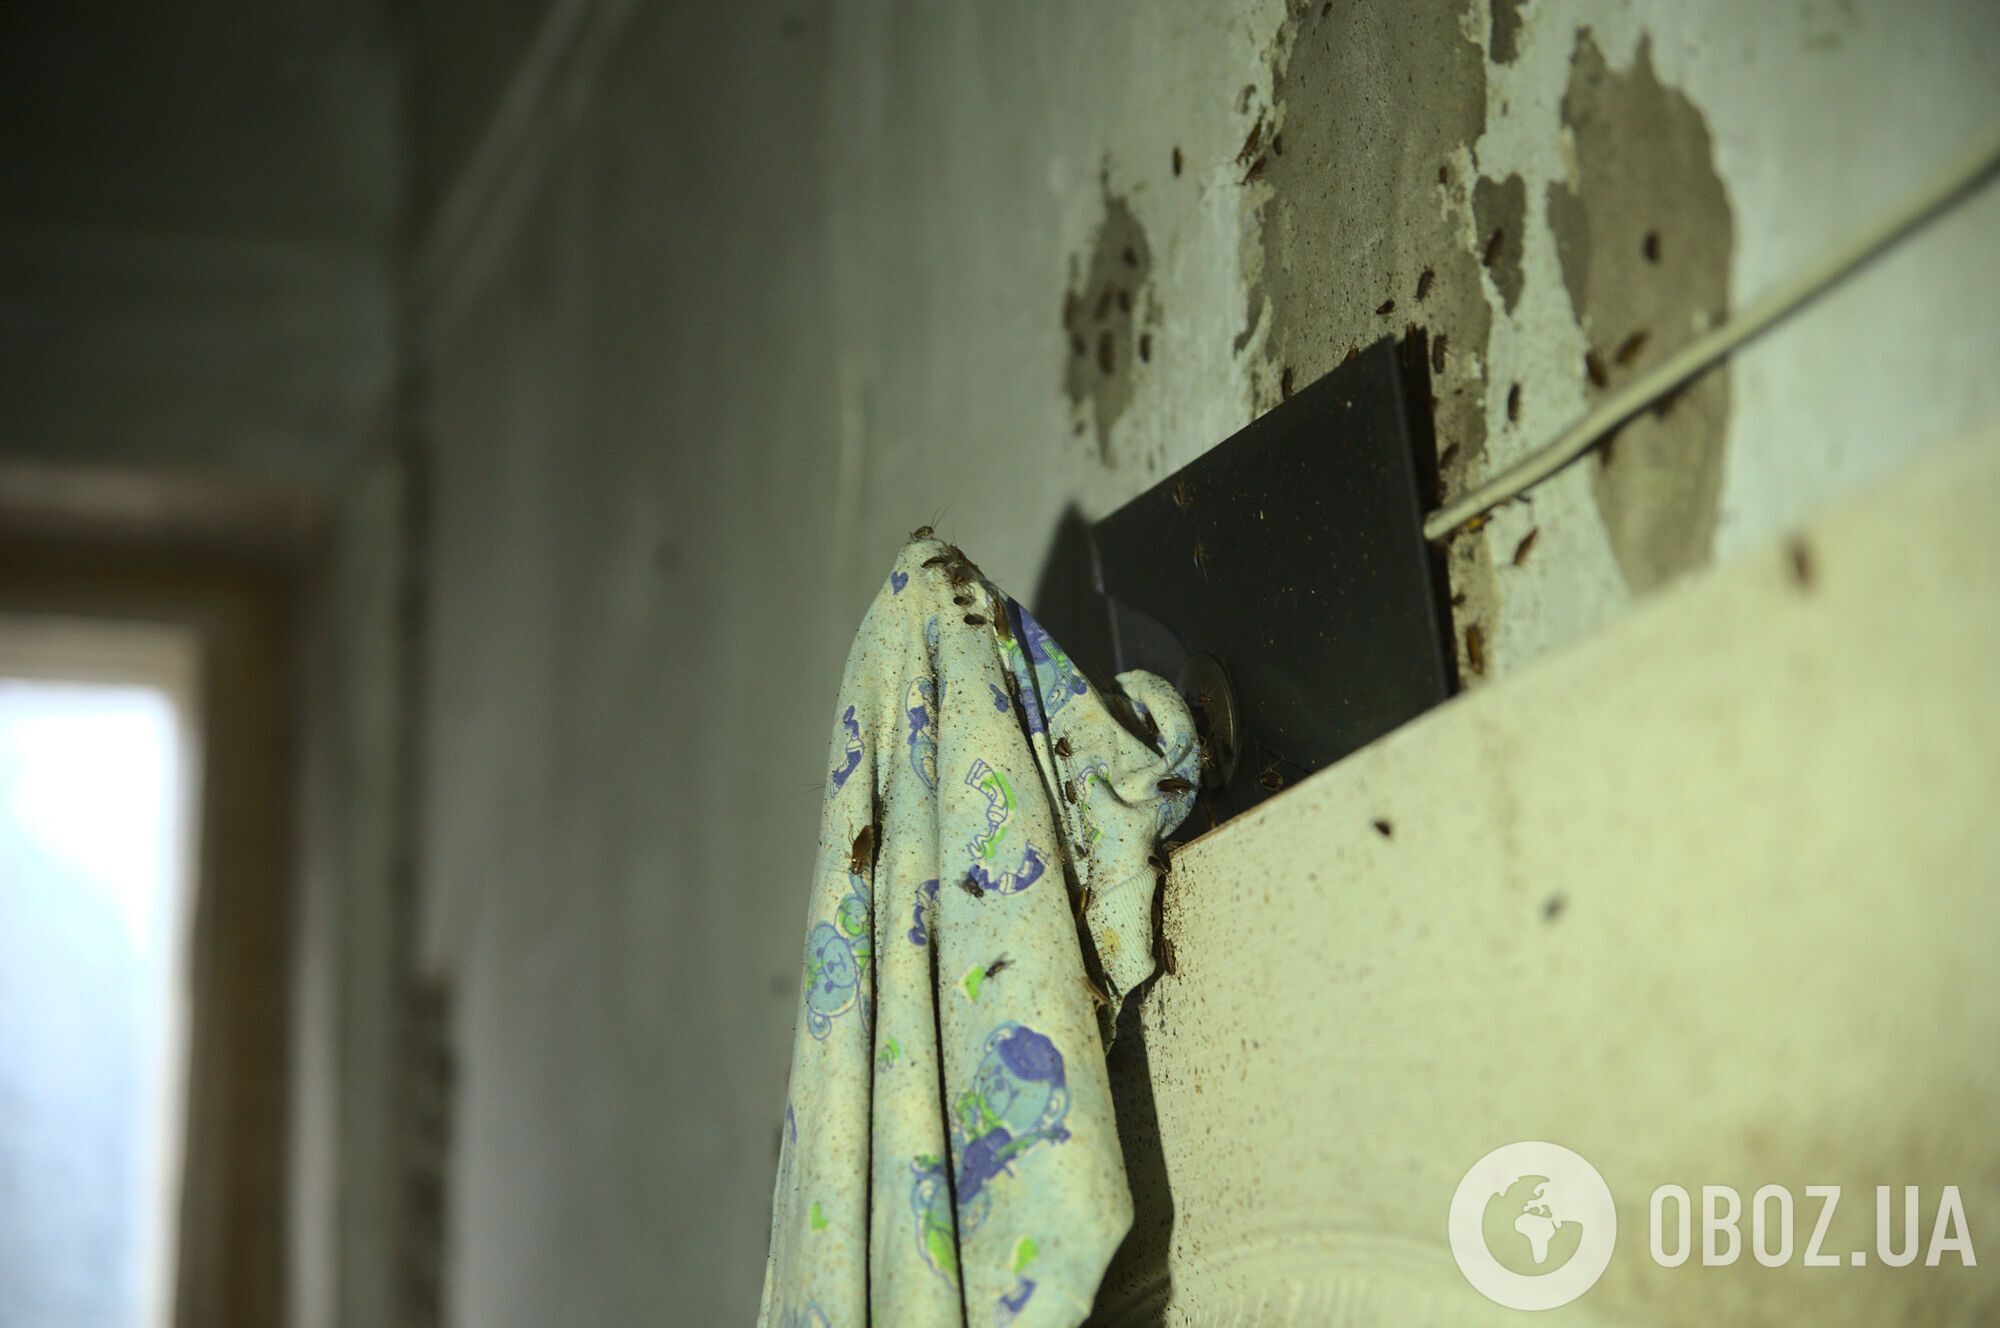 Тараканы заполонили все уголки в захламленной квартире в Харькове